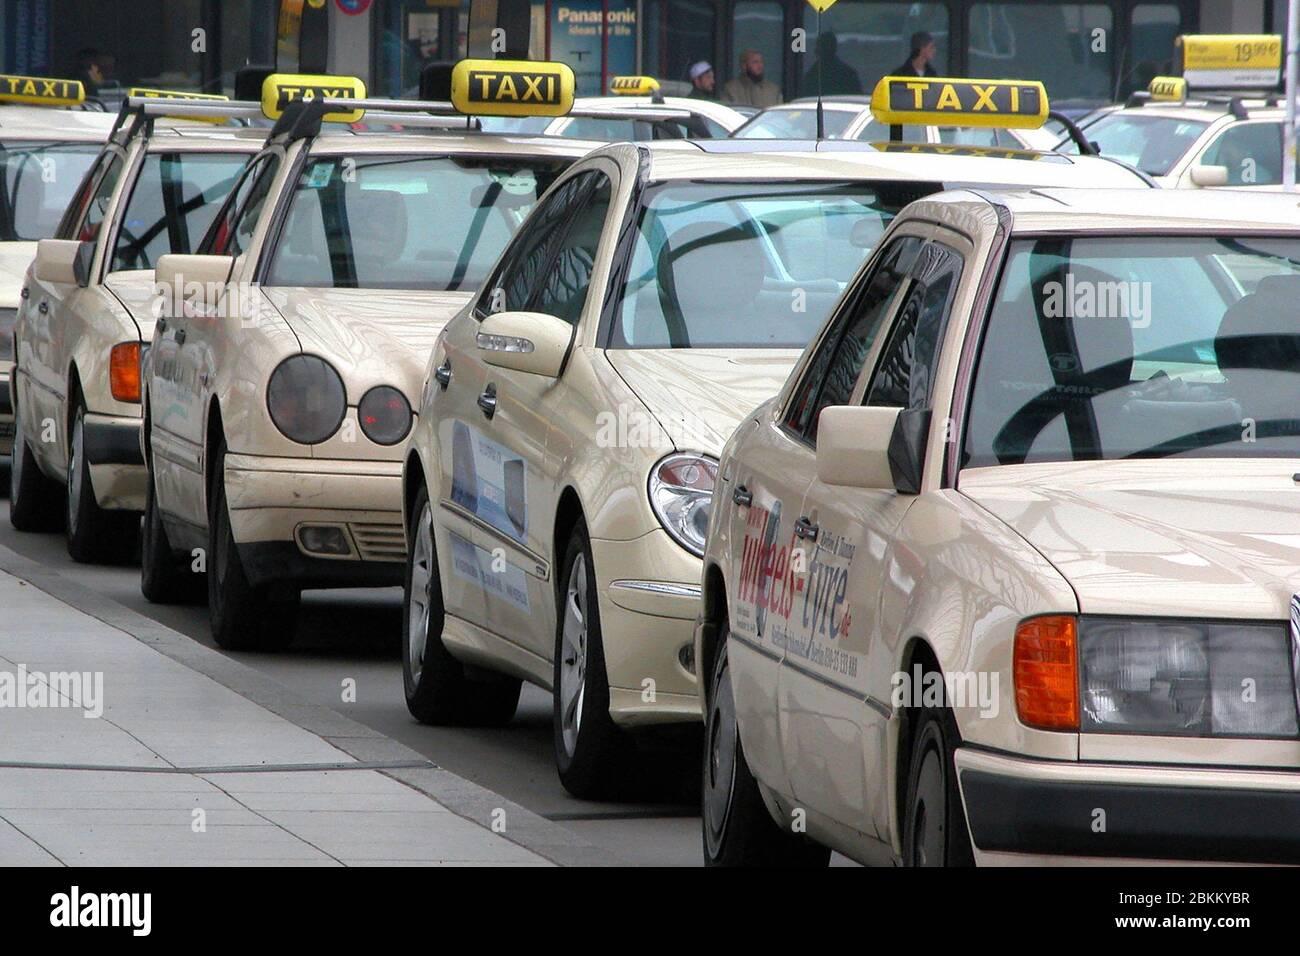 Taxis am Taxenstand Foto de stock